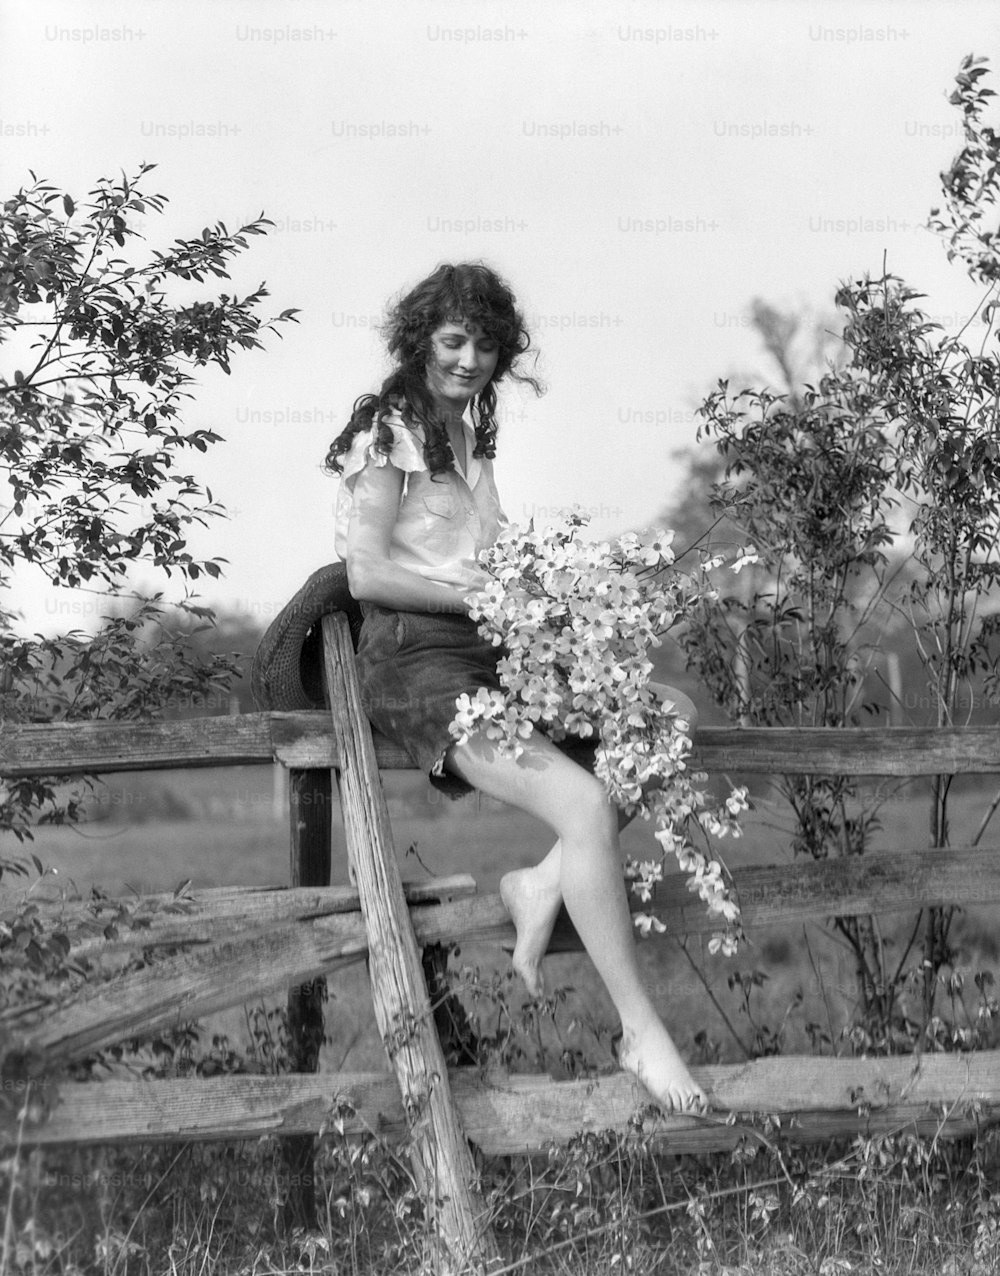 ÉTATS-UNIS - Circa 1930s : Femme souriante assise sur une clôture à rail fendu pieds nus portant un jean coupé et une chemise à manches courtes tenant une grappe de fleurs de cornouiller romantique.